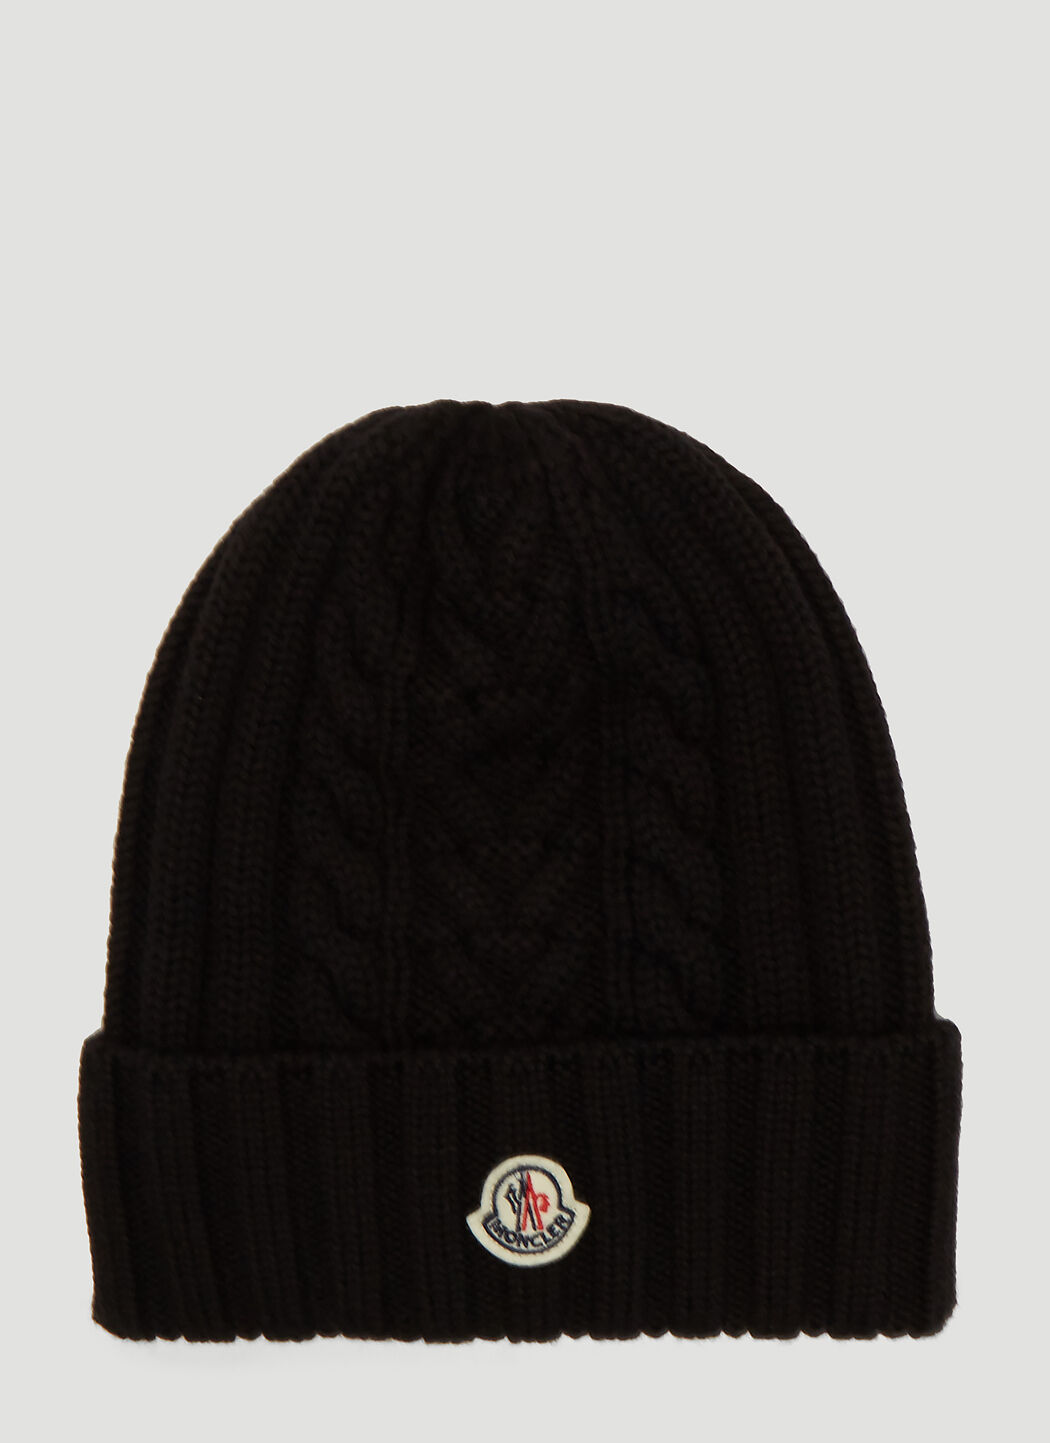 Saint Laurent Cable-Knit Beanie Hat Black sla0238013